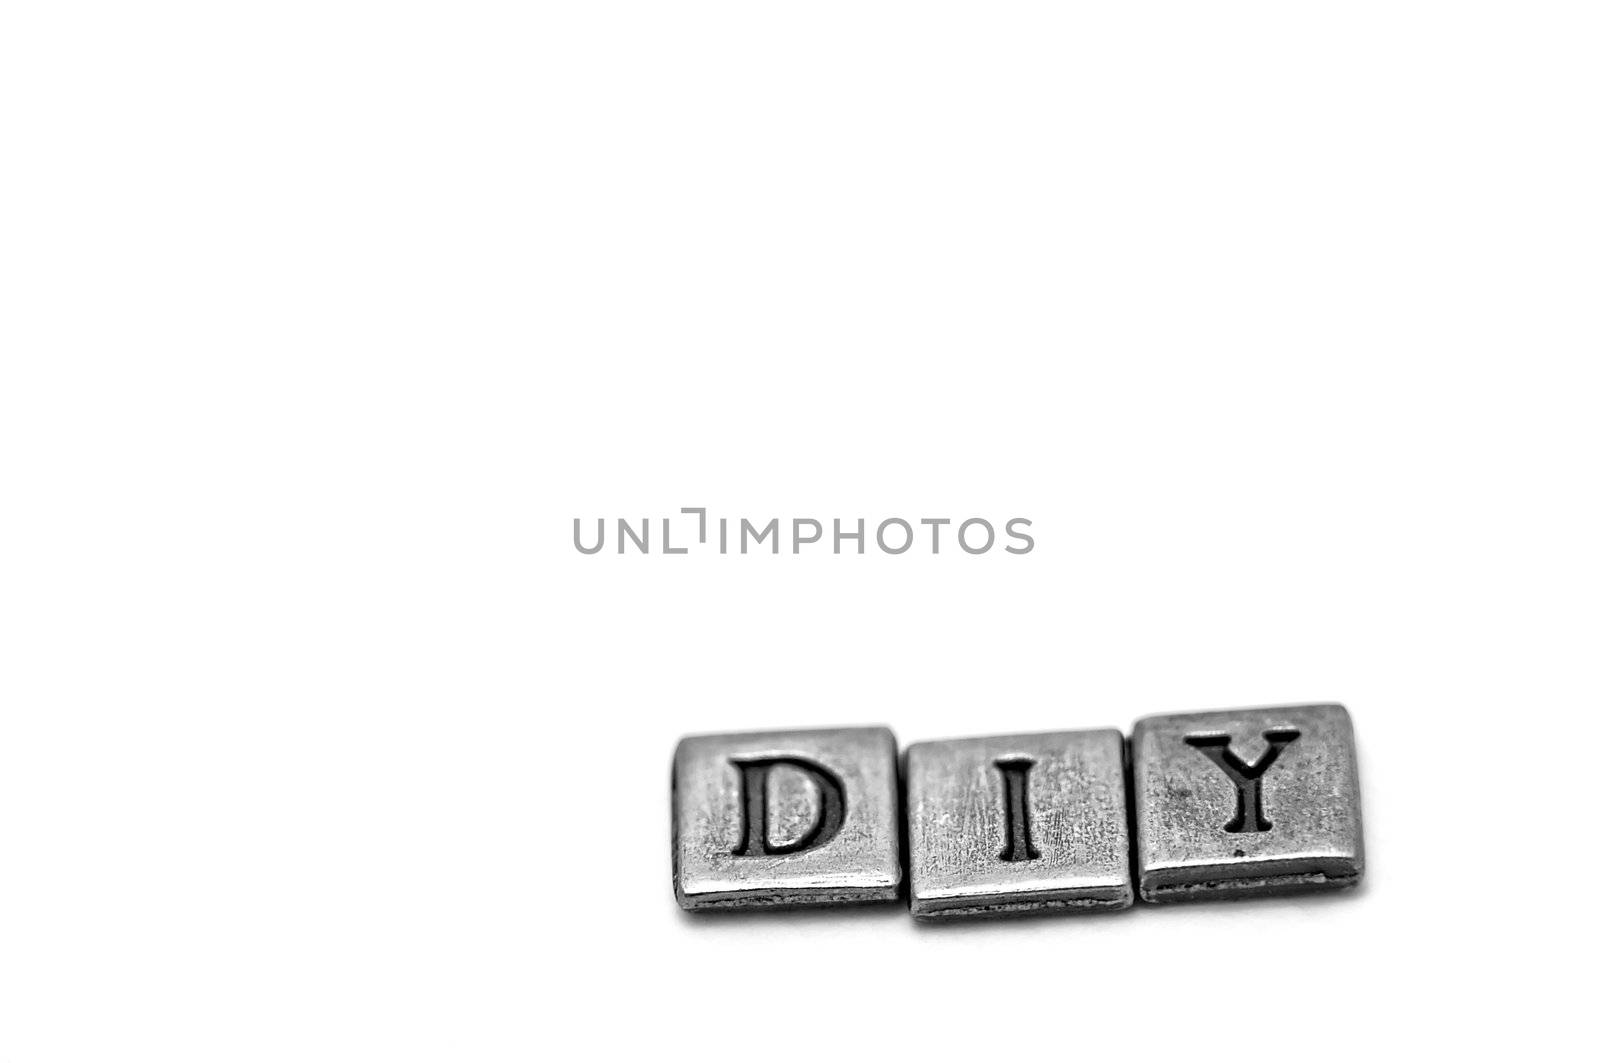 Metal scrapbooking letters spelling DIY by Talanis